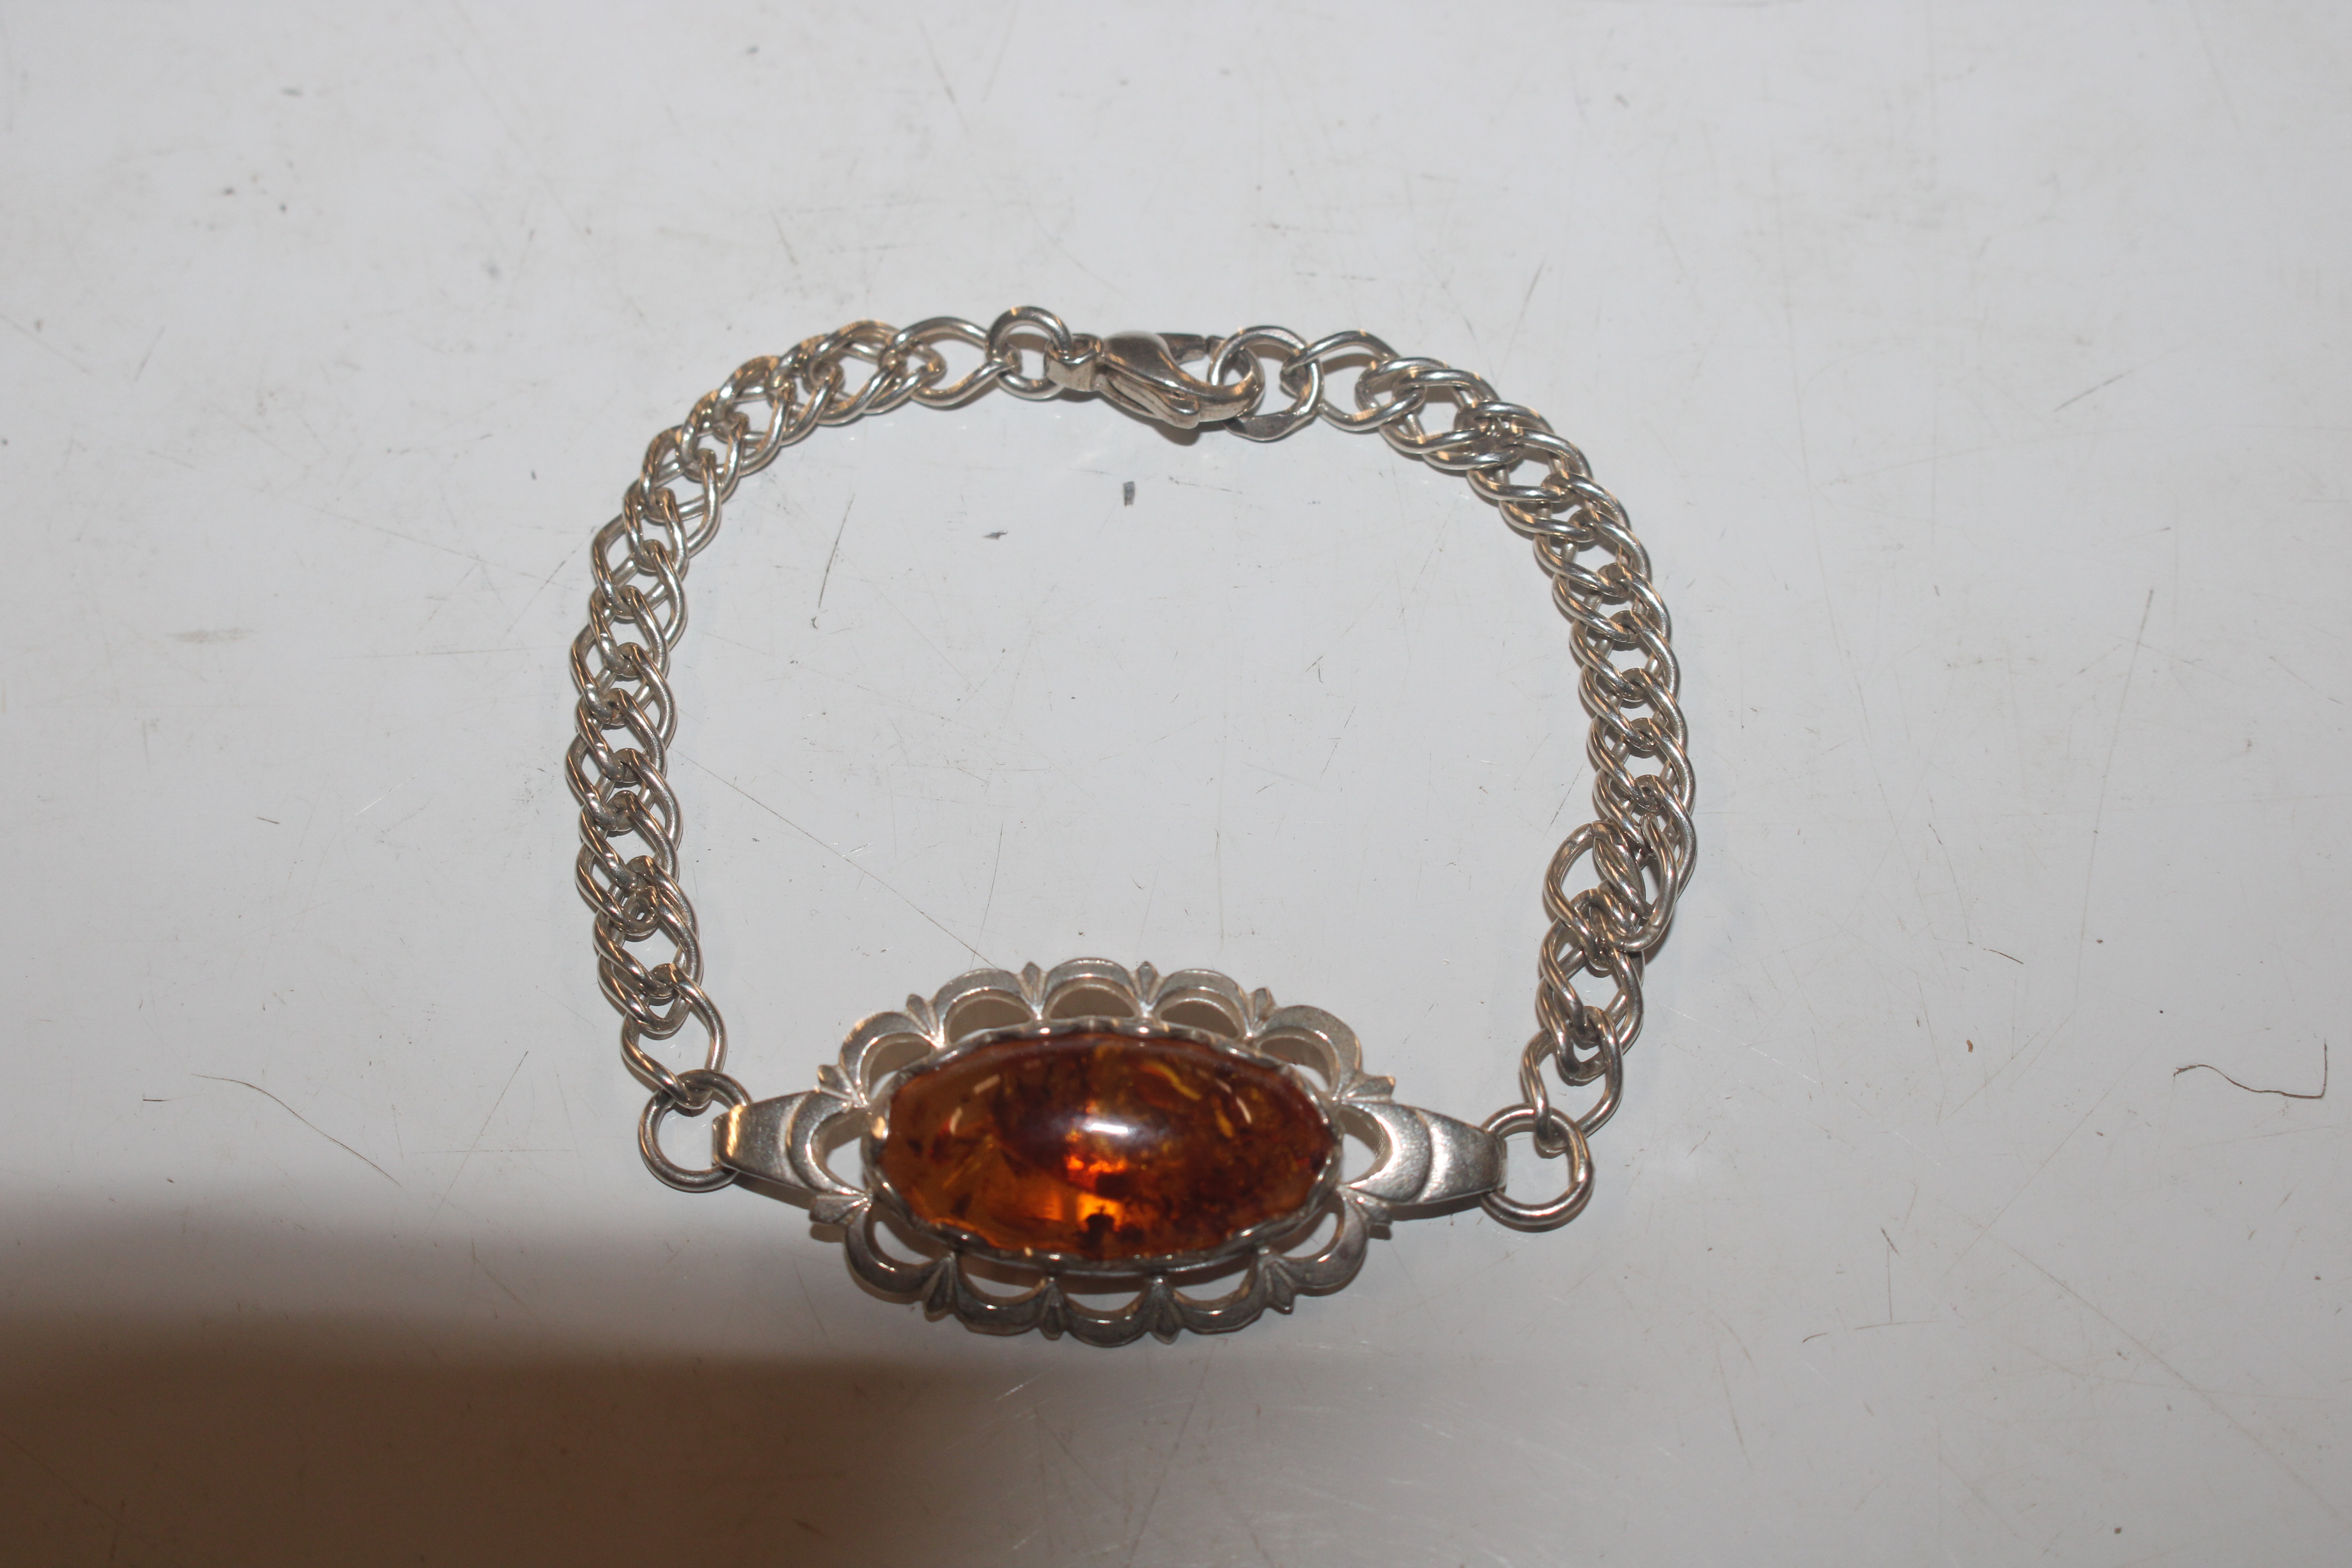 A vintage Sterling silver and amber bracelet, appr